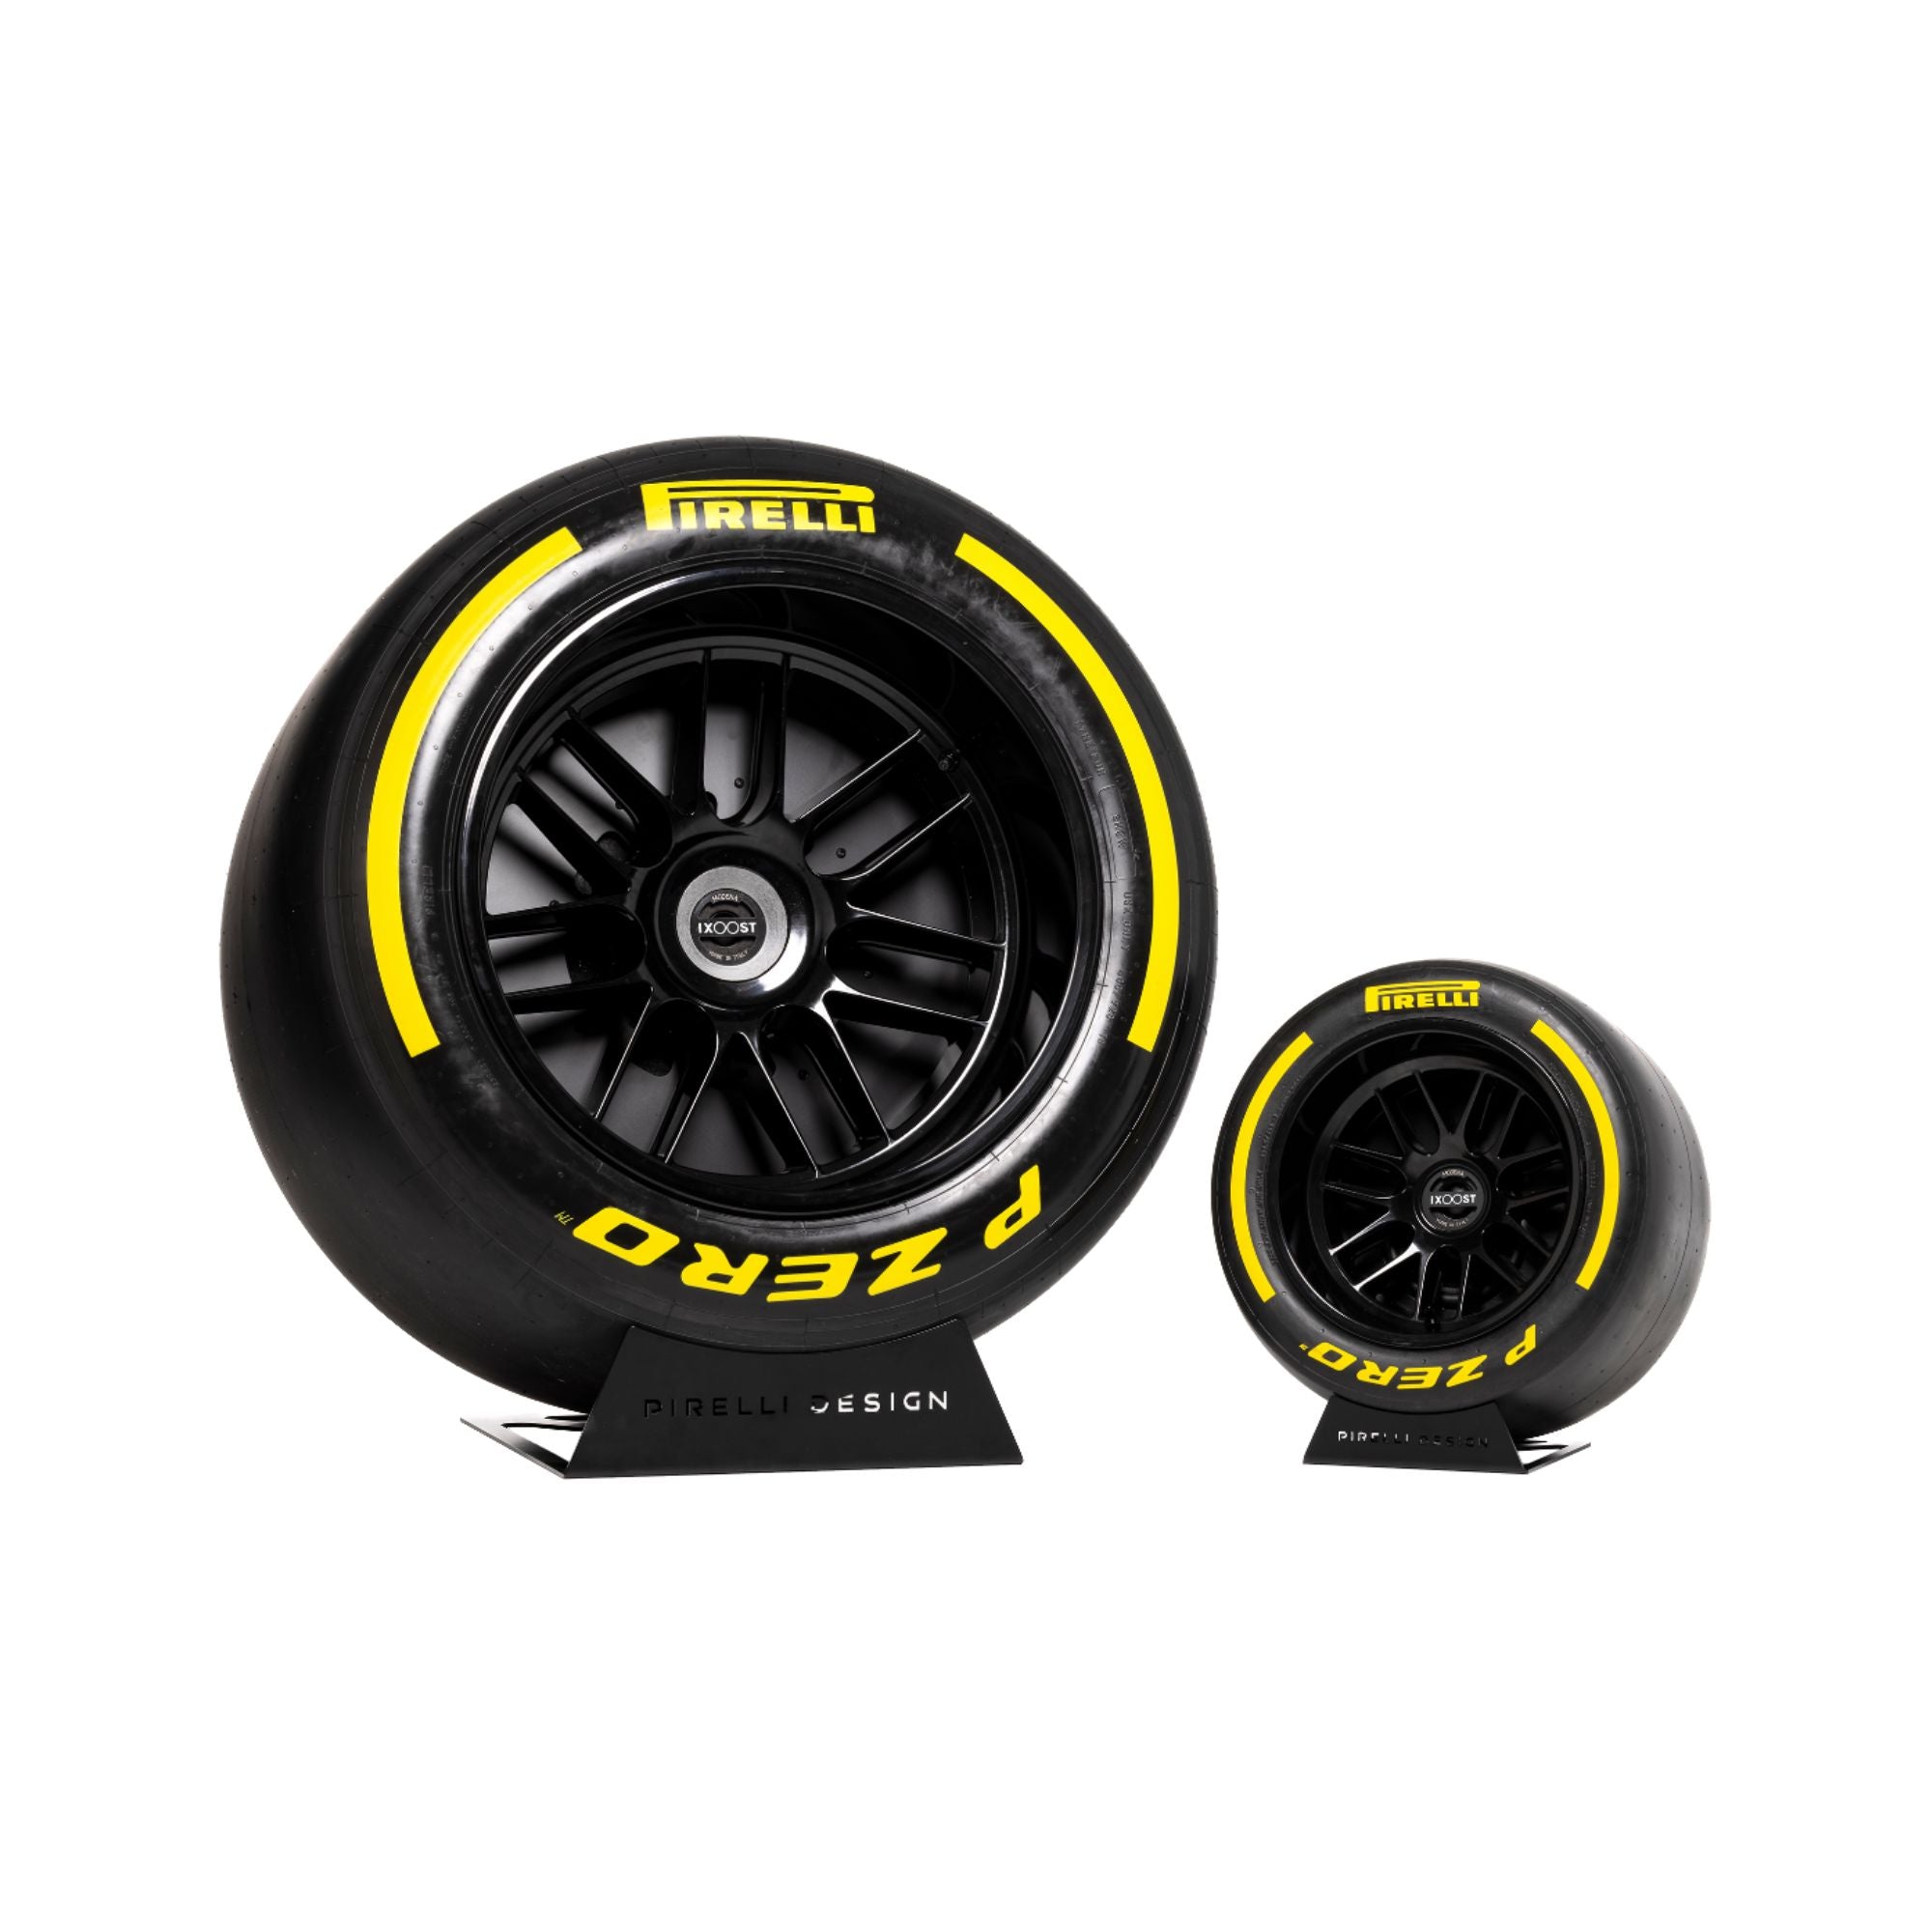 IXOOST Pirelli P-Zero Sound -Yellow, IXOOST, Speakers - AVStore.in